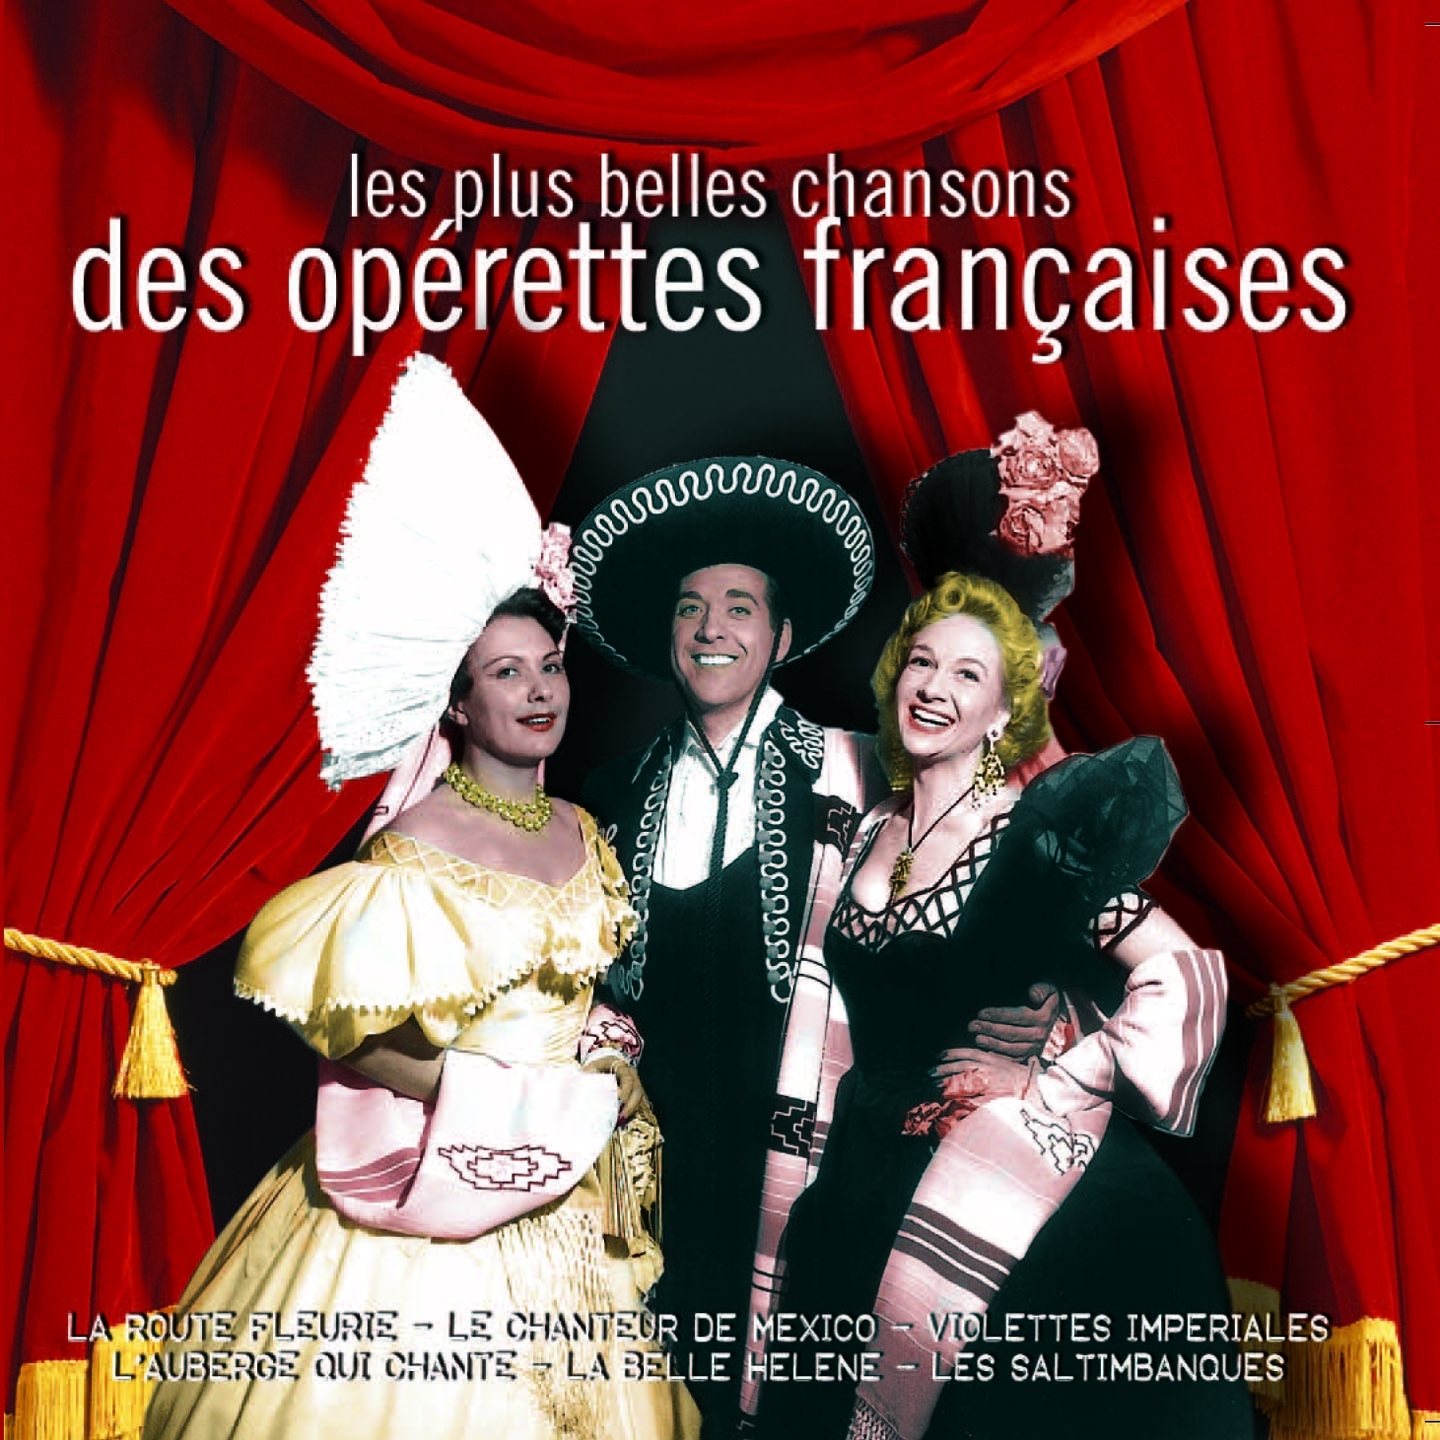 Les plus belles chansons des operettes francaises